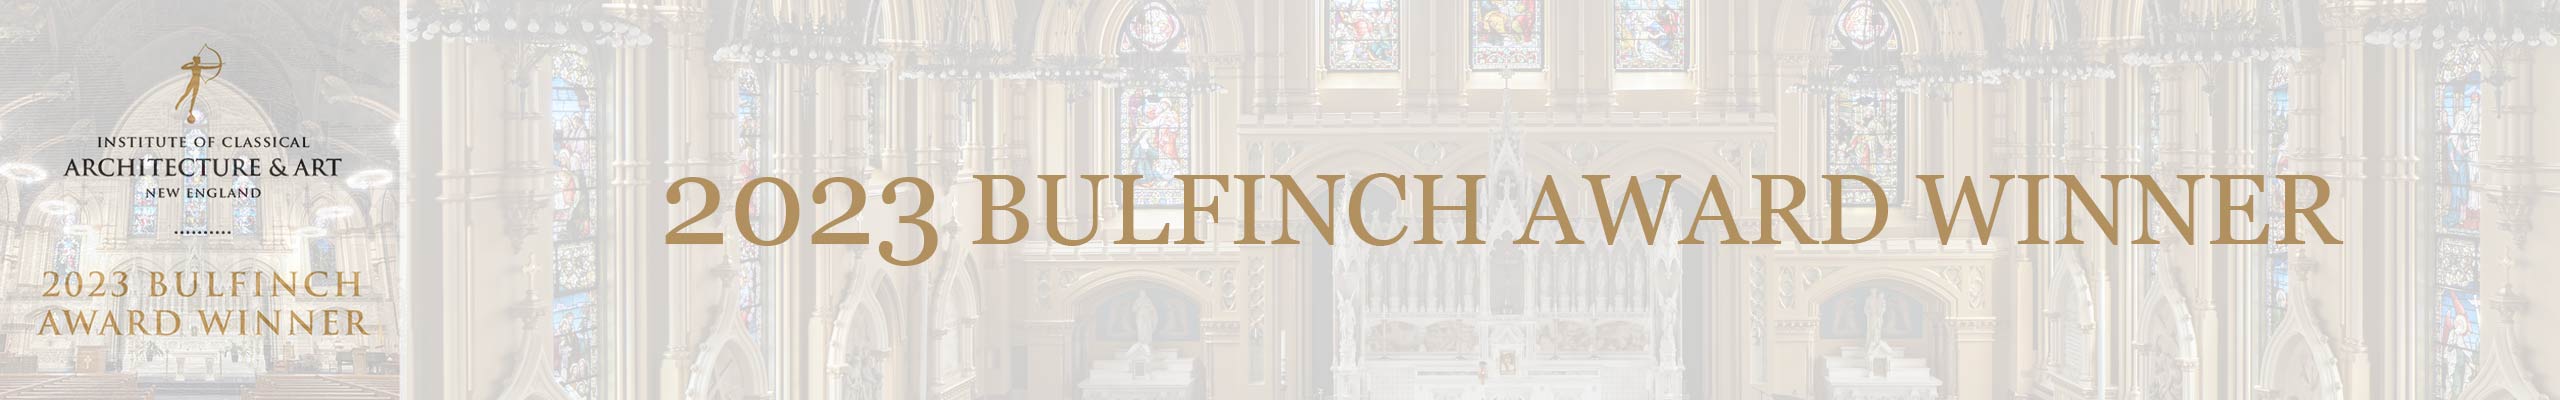 Bulfinch 2023 Award